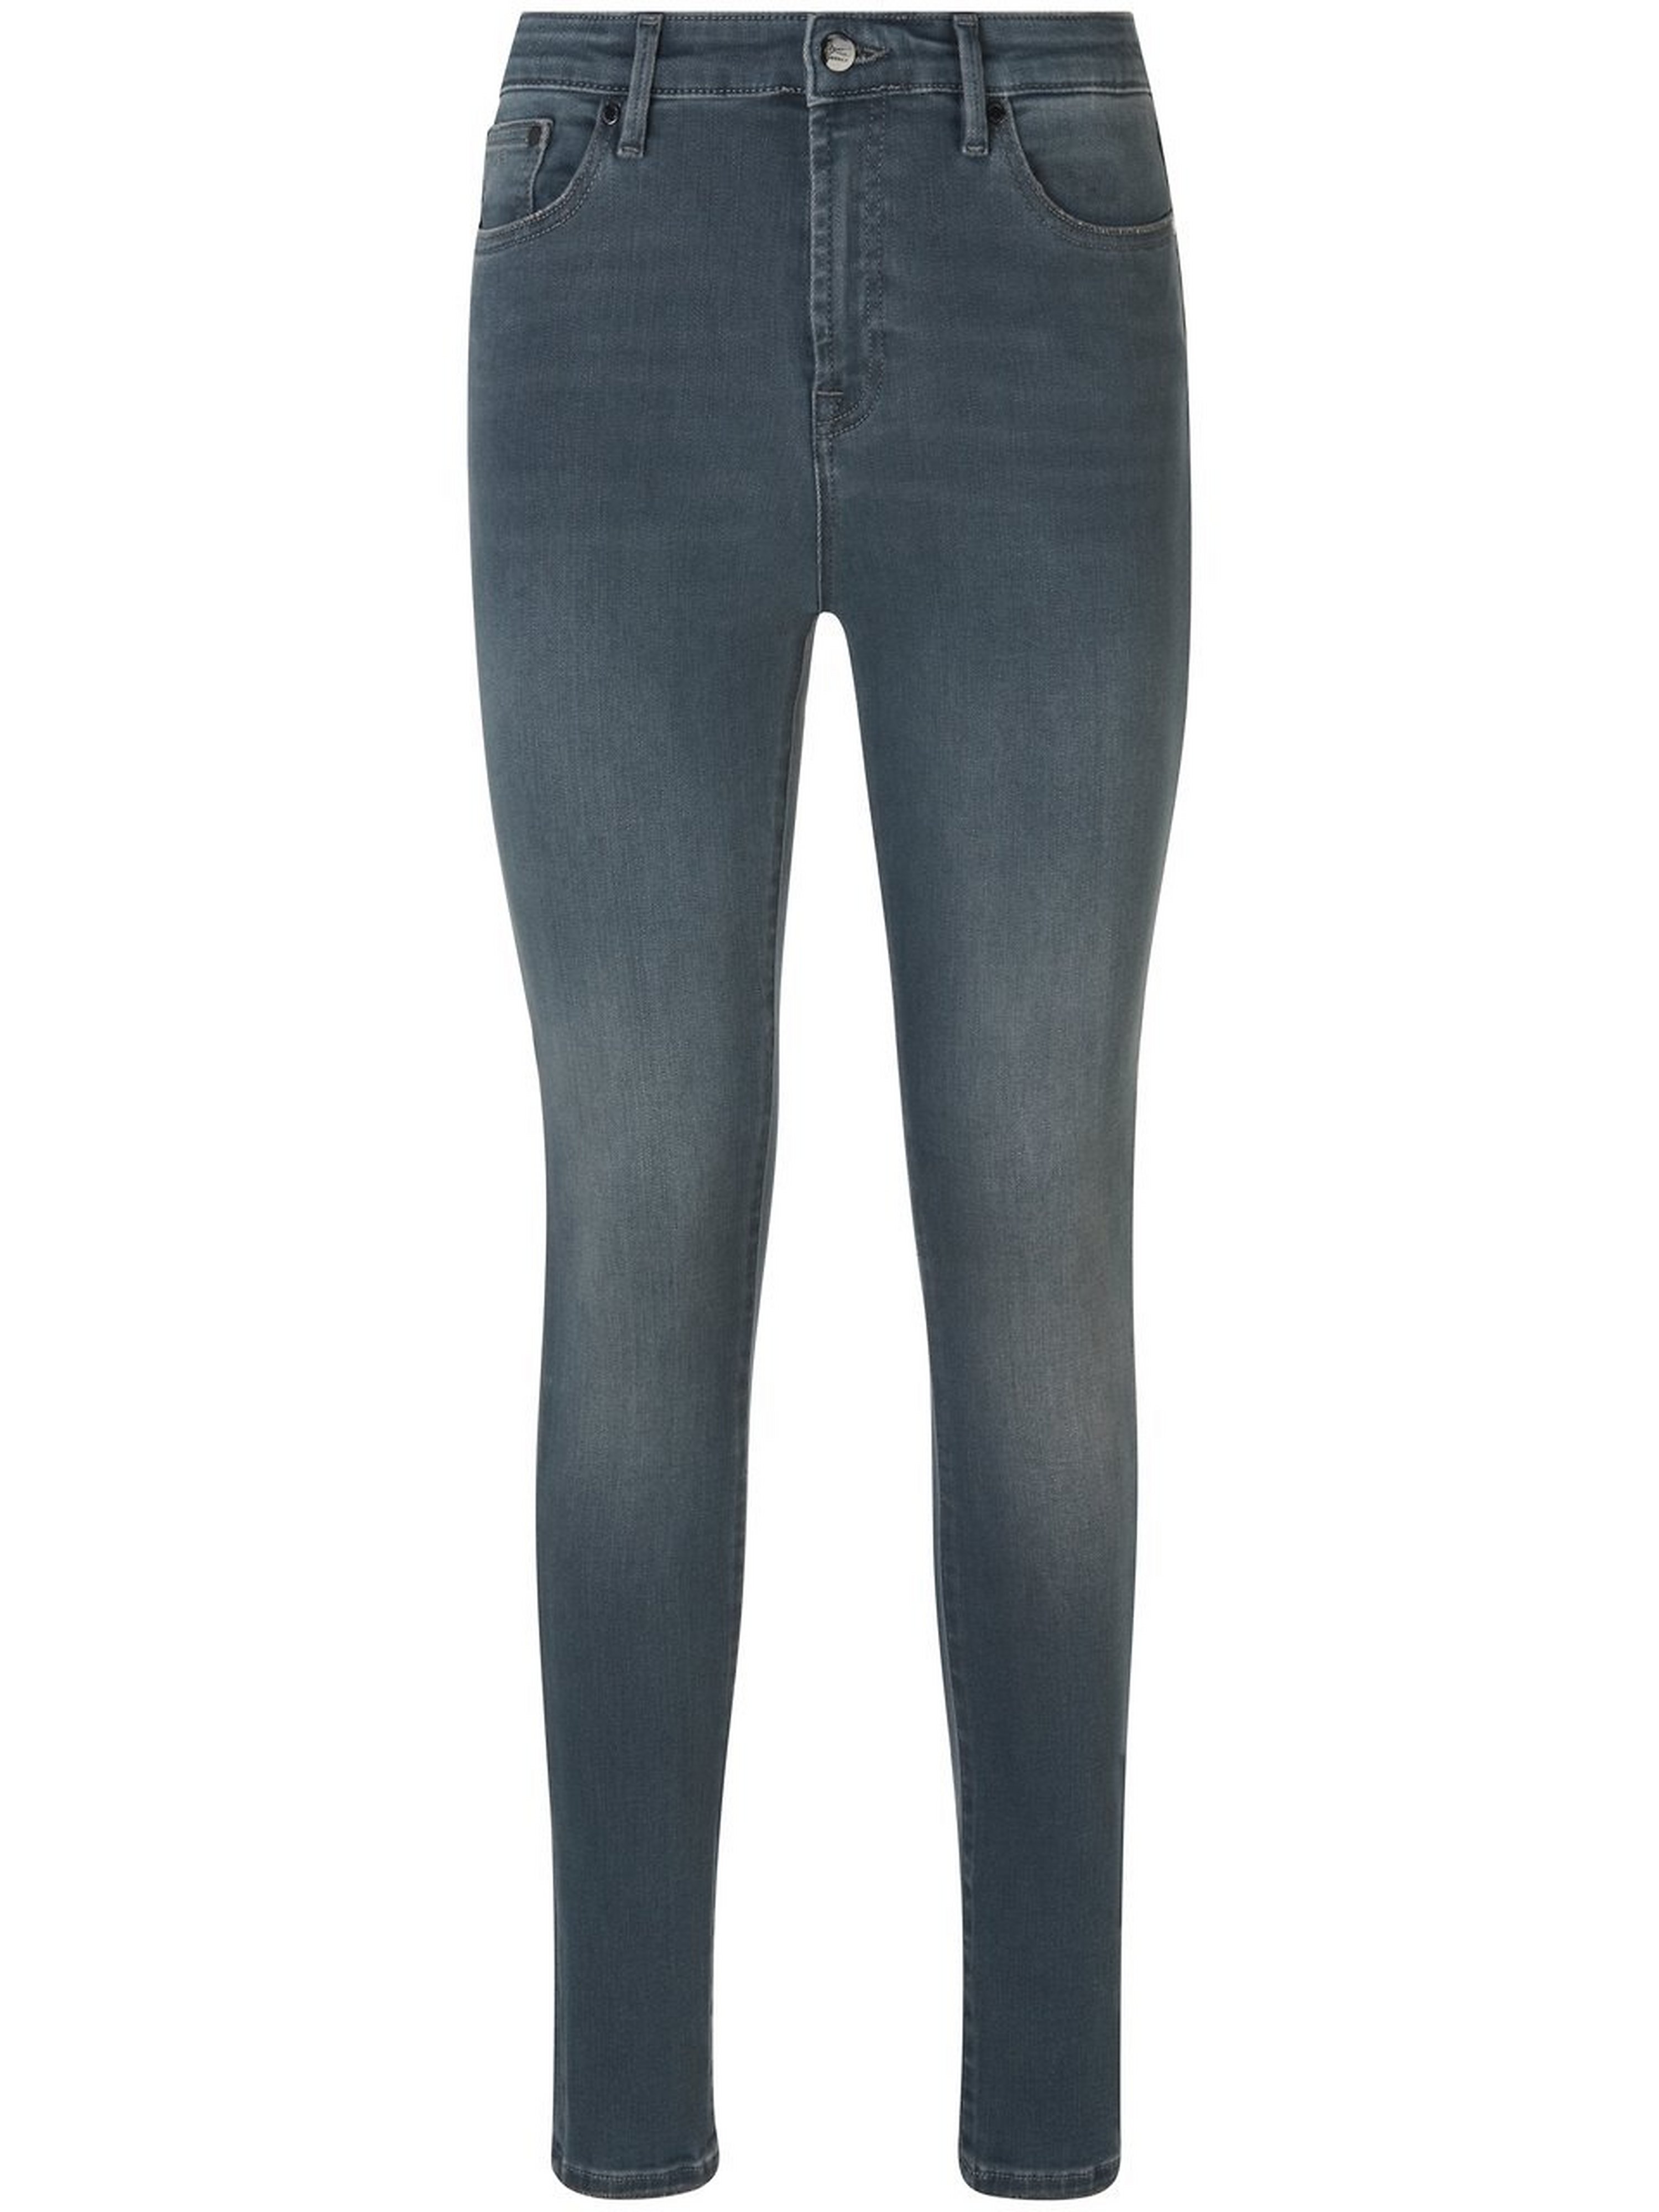 Jeans 'Needle' in inchlengte 30 Van Denham grijs